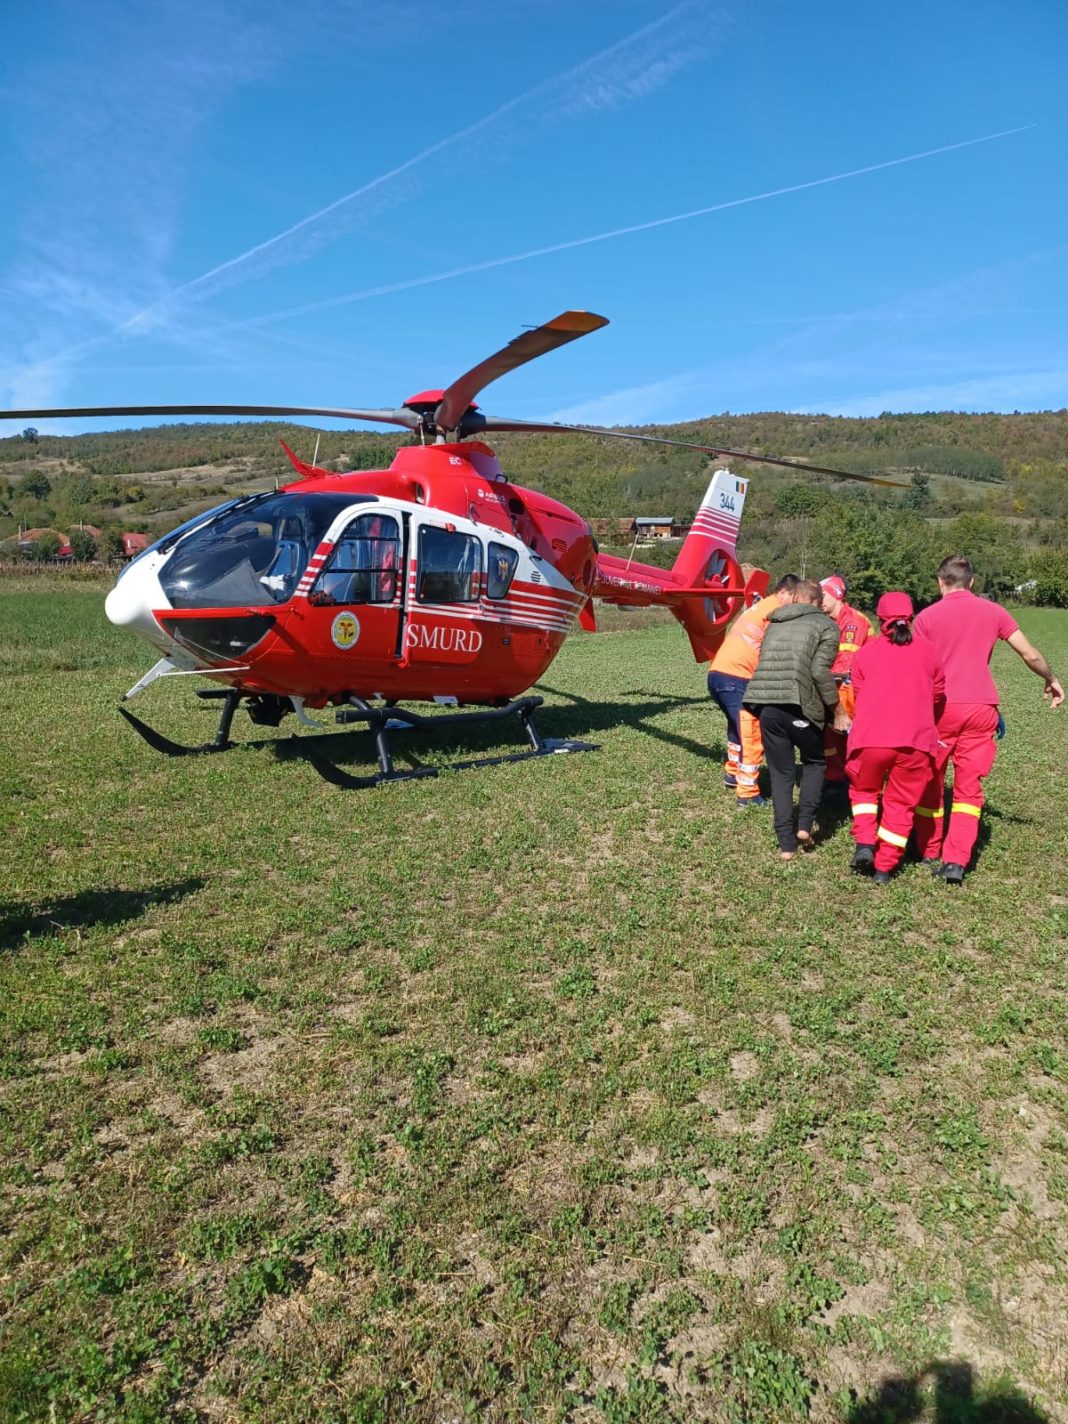 A fost transportat cu un elicopter SMURD la o unitate medicală, pentru acordarea de îngrijiri de specialitate